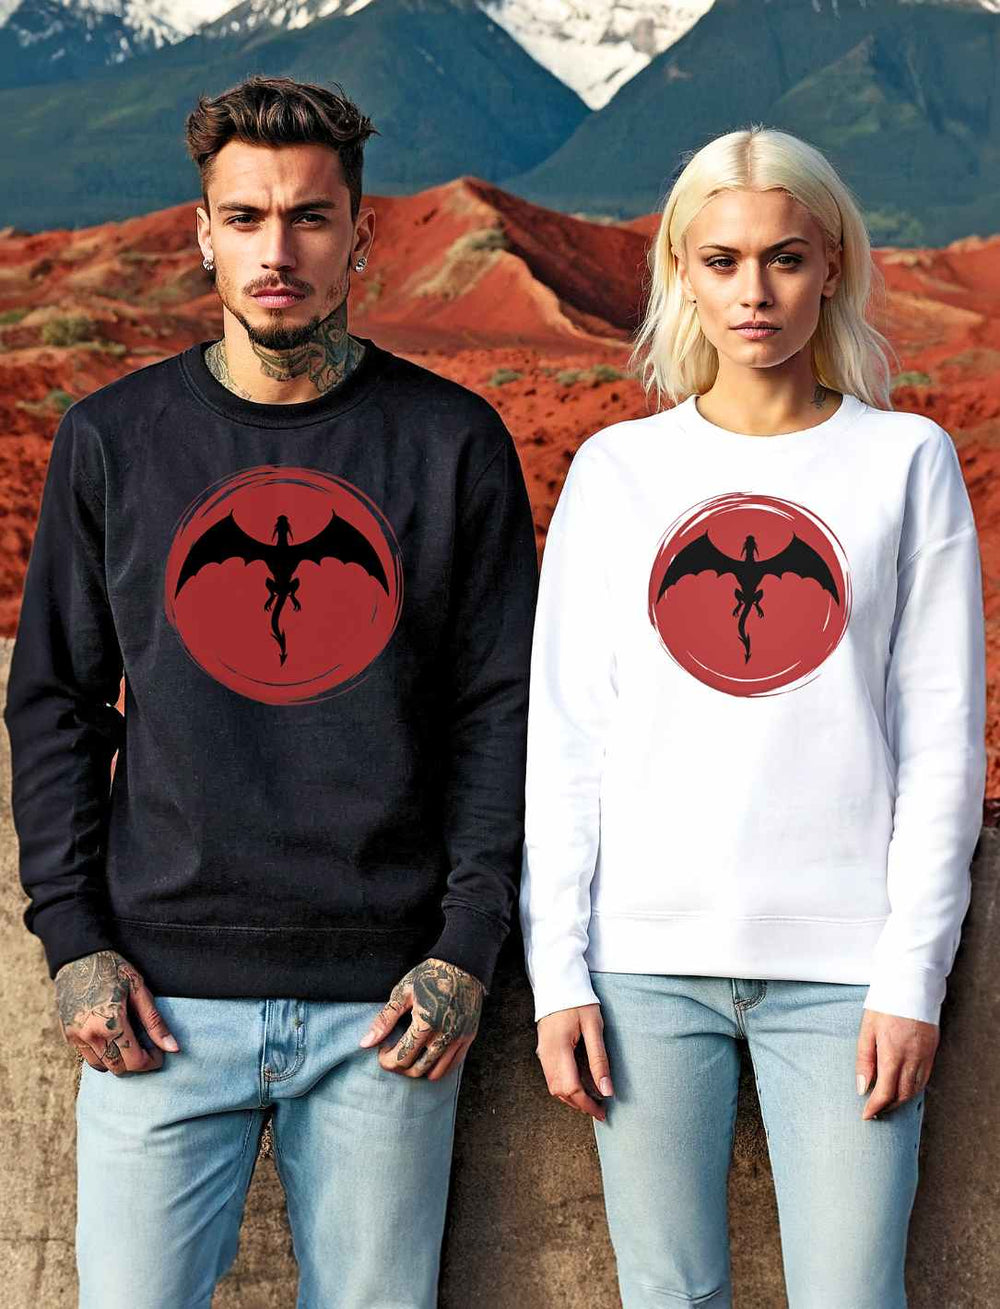 Junger Mann und junge Frau in 'Saga of the Dragon' Sweatshirts in Schwarz und Weiß posieren vor einer dramatischen Landschaft aus Bergen und Wüste, die Energie alter Sagen ausstrahlend.